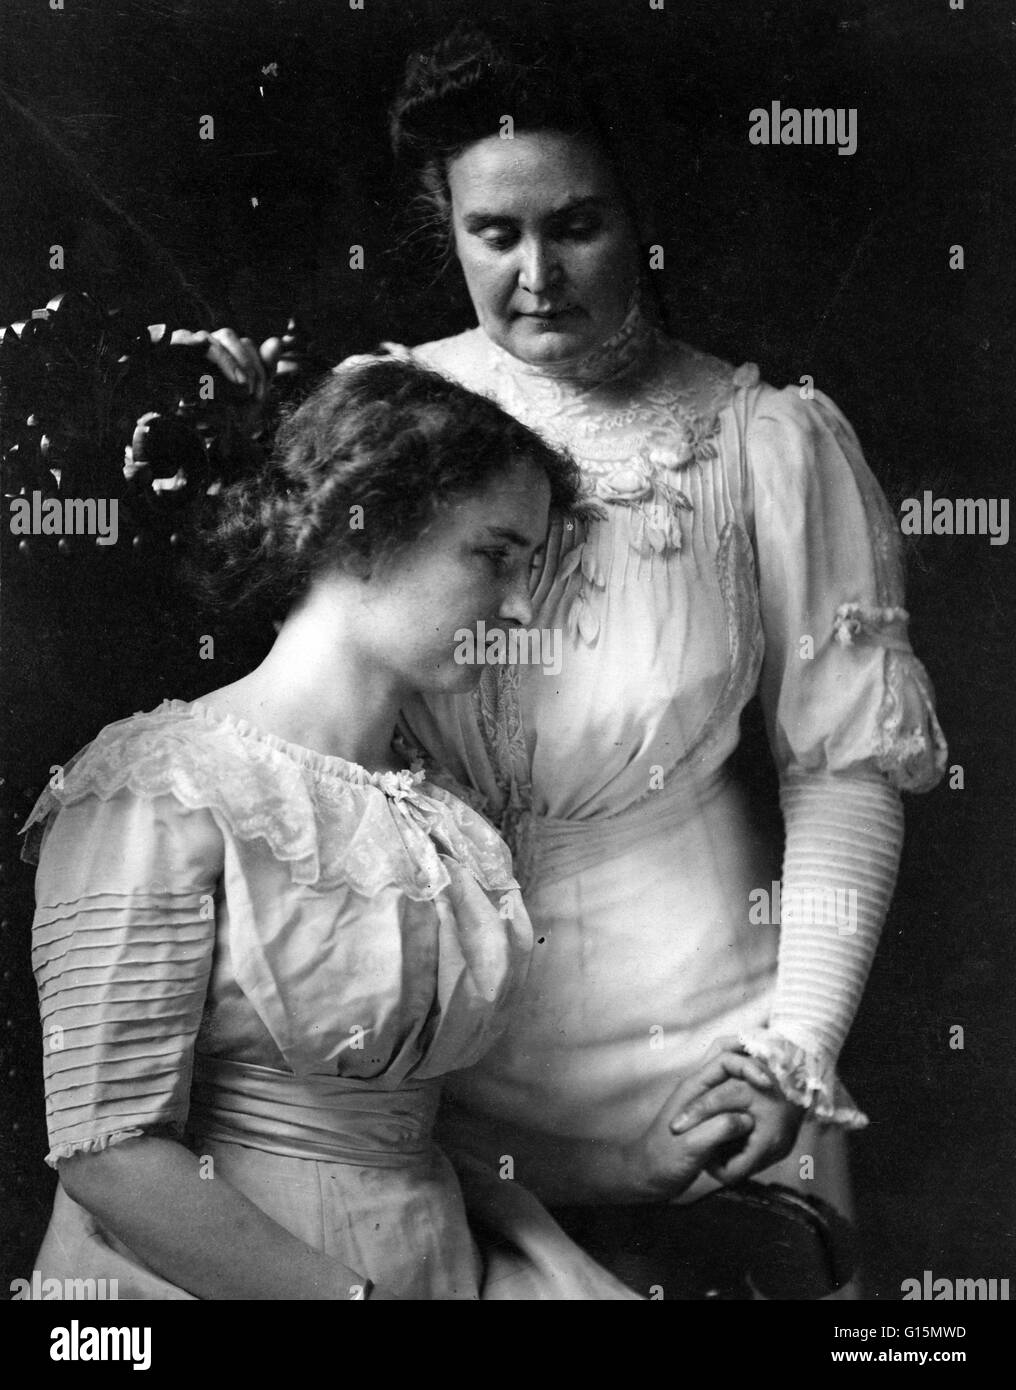 Helen Keller tenendo la mano del suo maestro, Anne Sullivan Macy, circa 1909. Helen Adams Keller (Giugno 27, 1880 - Giugno 1, 1968) era un autore americano, attivista politico, e docente. Aveva 19 mesi quando lei si contrae una malattia che potrebbe essere Foto Stock